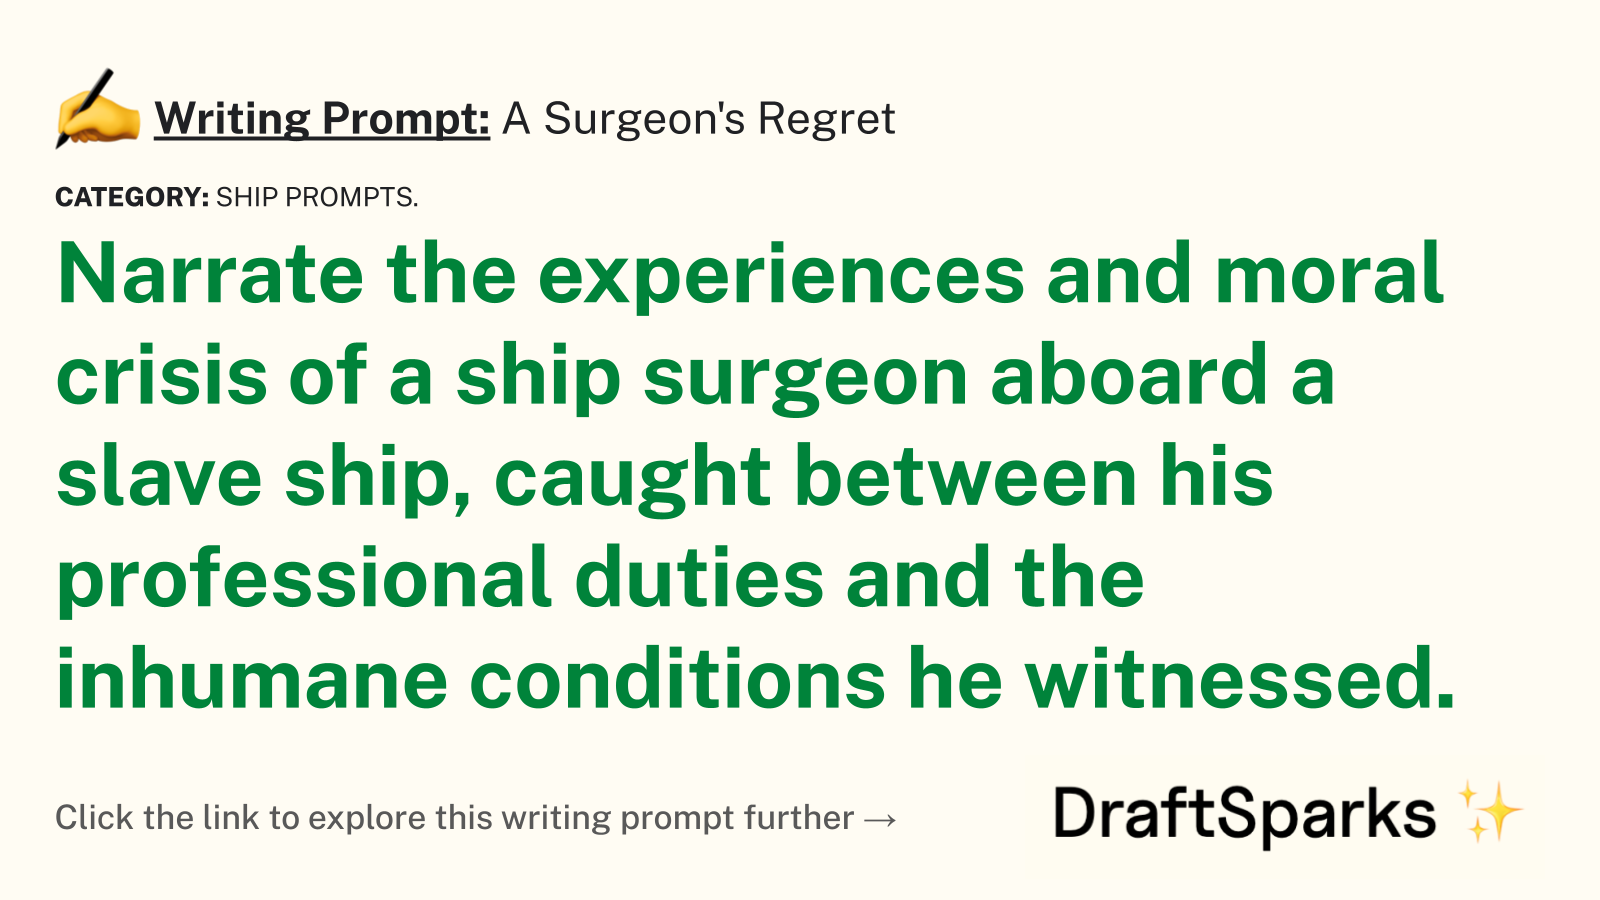 A Surgeon’s Regret